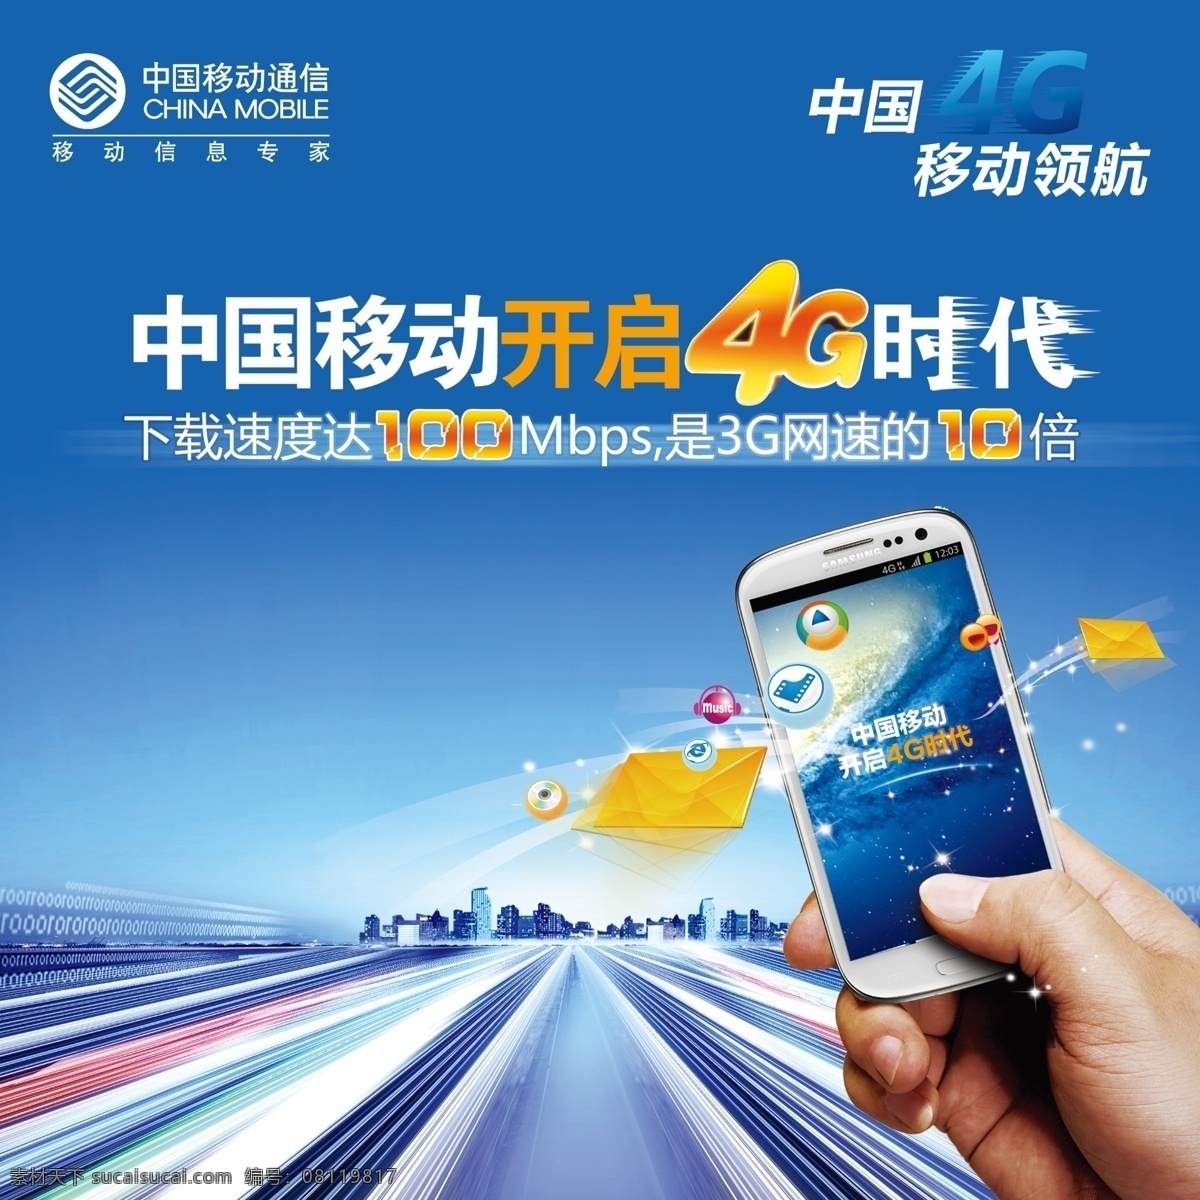 中国移动 移动标志 移动宣传单 移动广告 移动背景 移动logo 移动4g 移动手机 4g时代 高速 手 高速公路 蓝色 蓝色背景